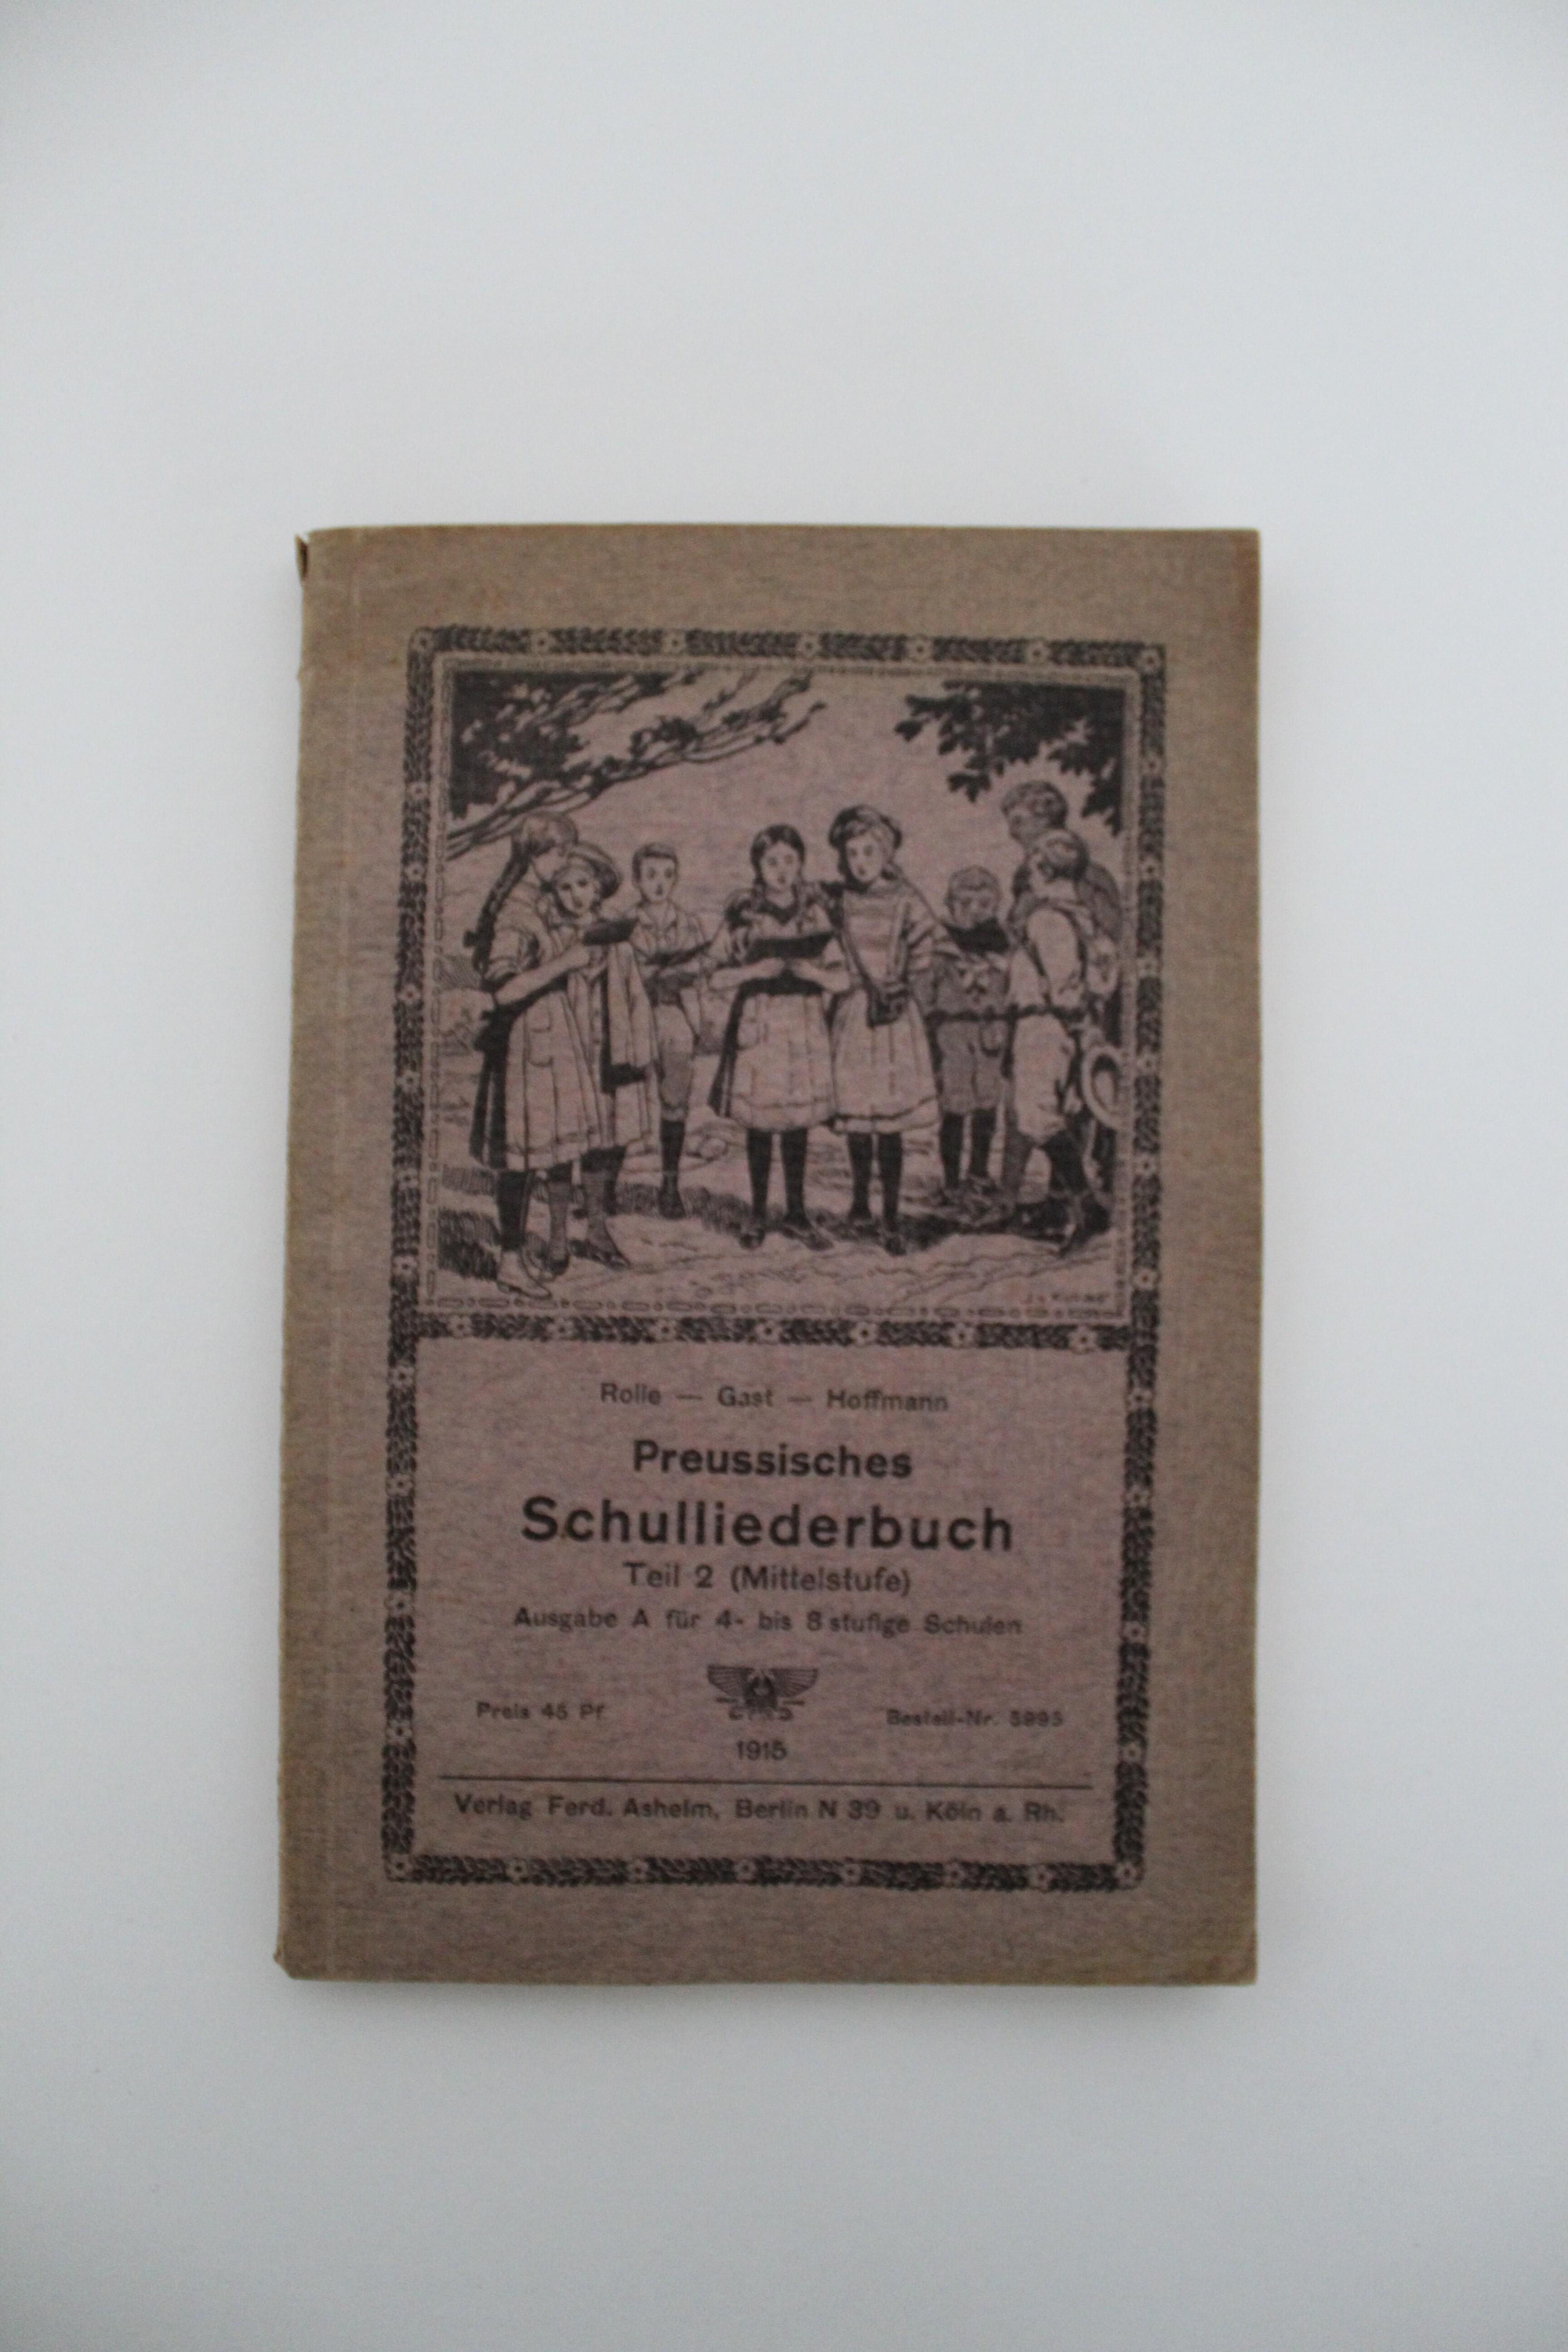 Preussisches Schulliederbuch Teil 2 (Mittelstufe) Ausgabe A für 4 bis 8 stufige Schulen. 1915. Berlin Köln (Reckahner Museen CC BY-NC-SA)